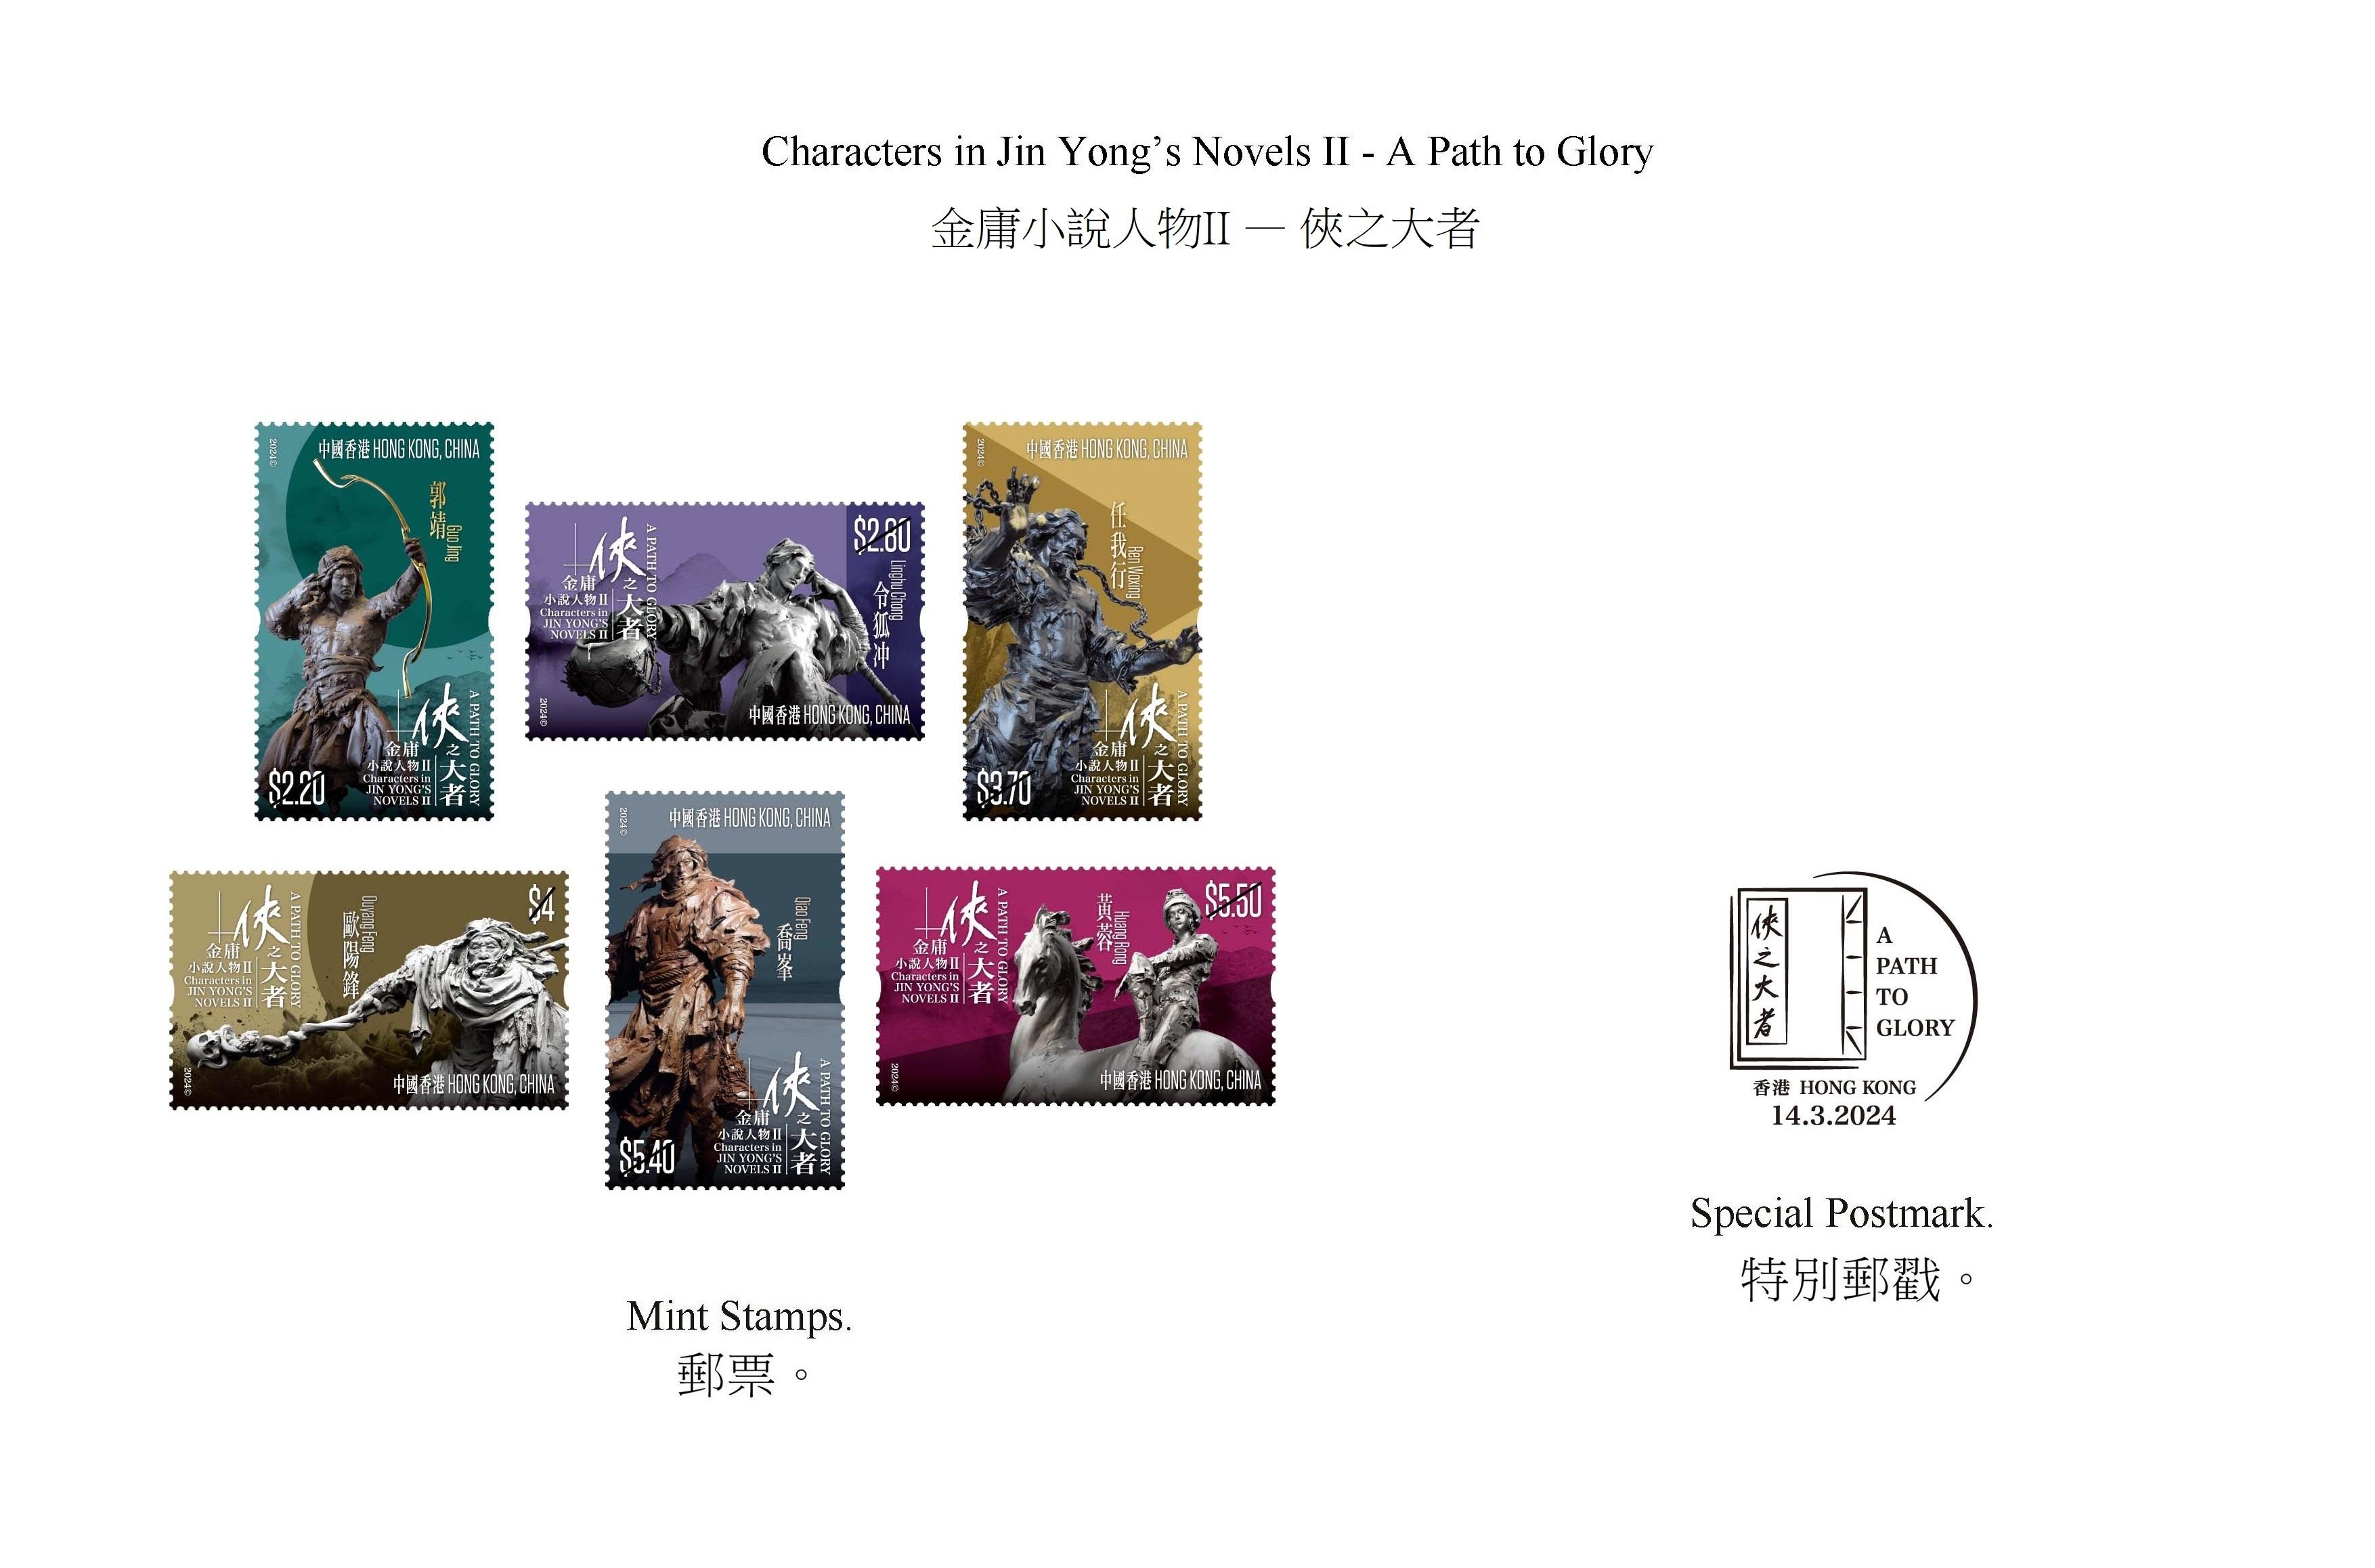 香港郵政三月十四日（星期四）發行以「金庸小說人物II──俠之大者」為題的特別郵票及相關集郵品。圖示郵票和特別郵戳。